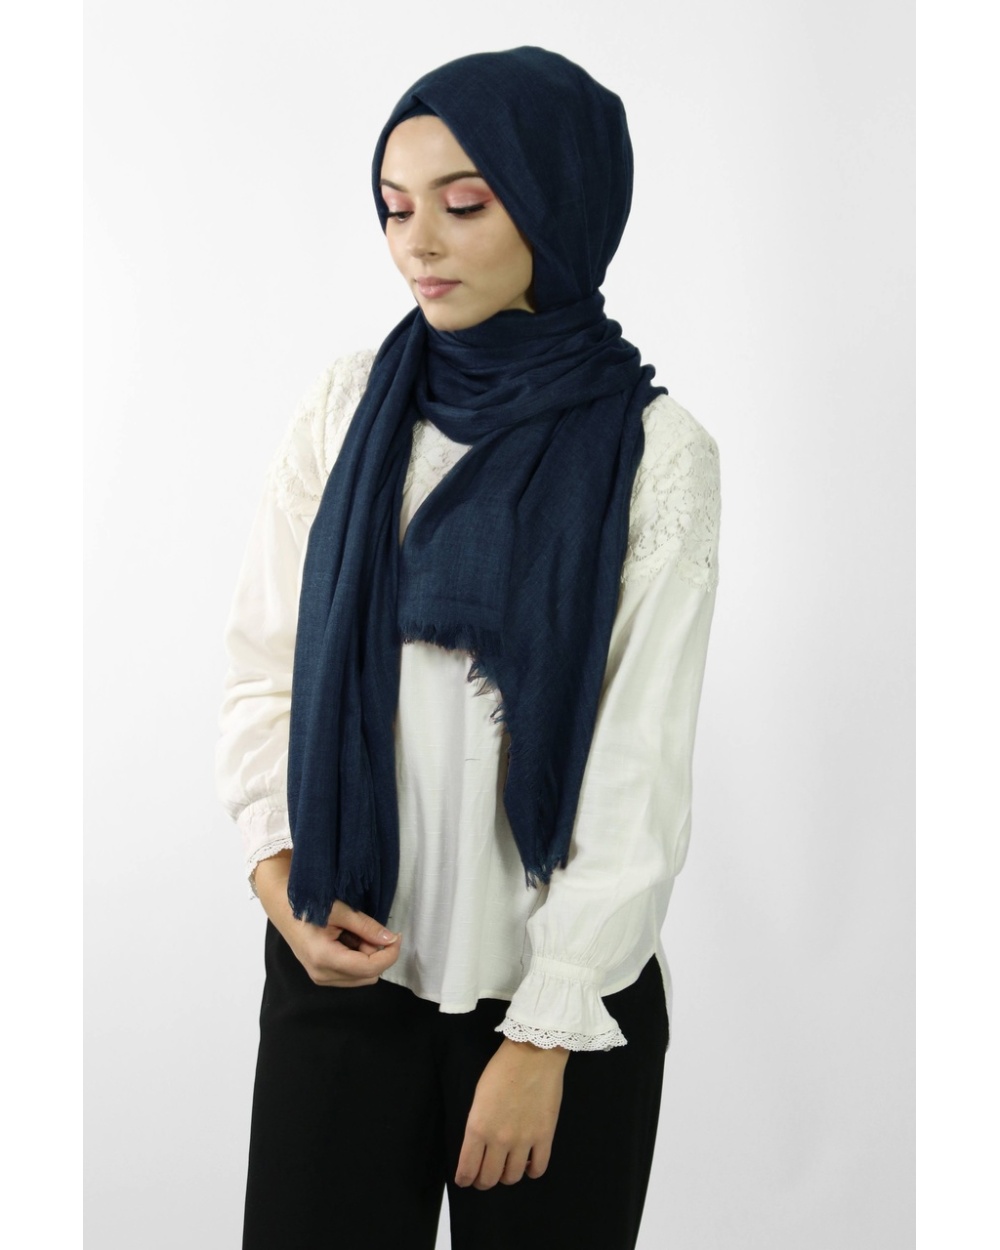 Maxi Hijab Coton PREMIUM bleu marine★